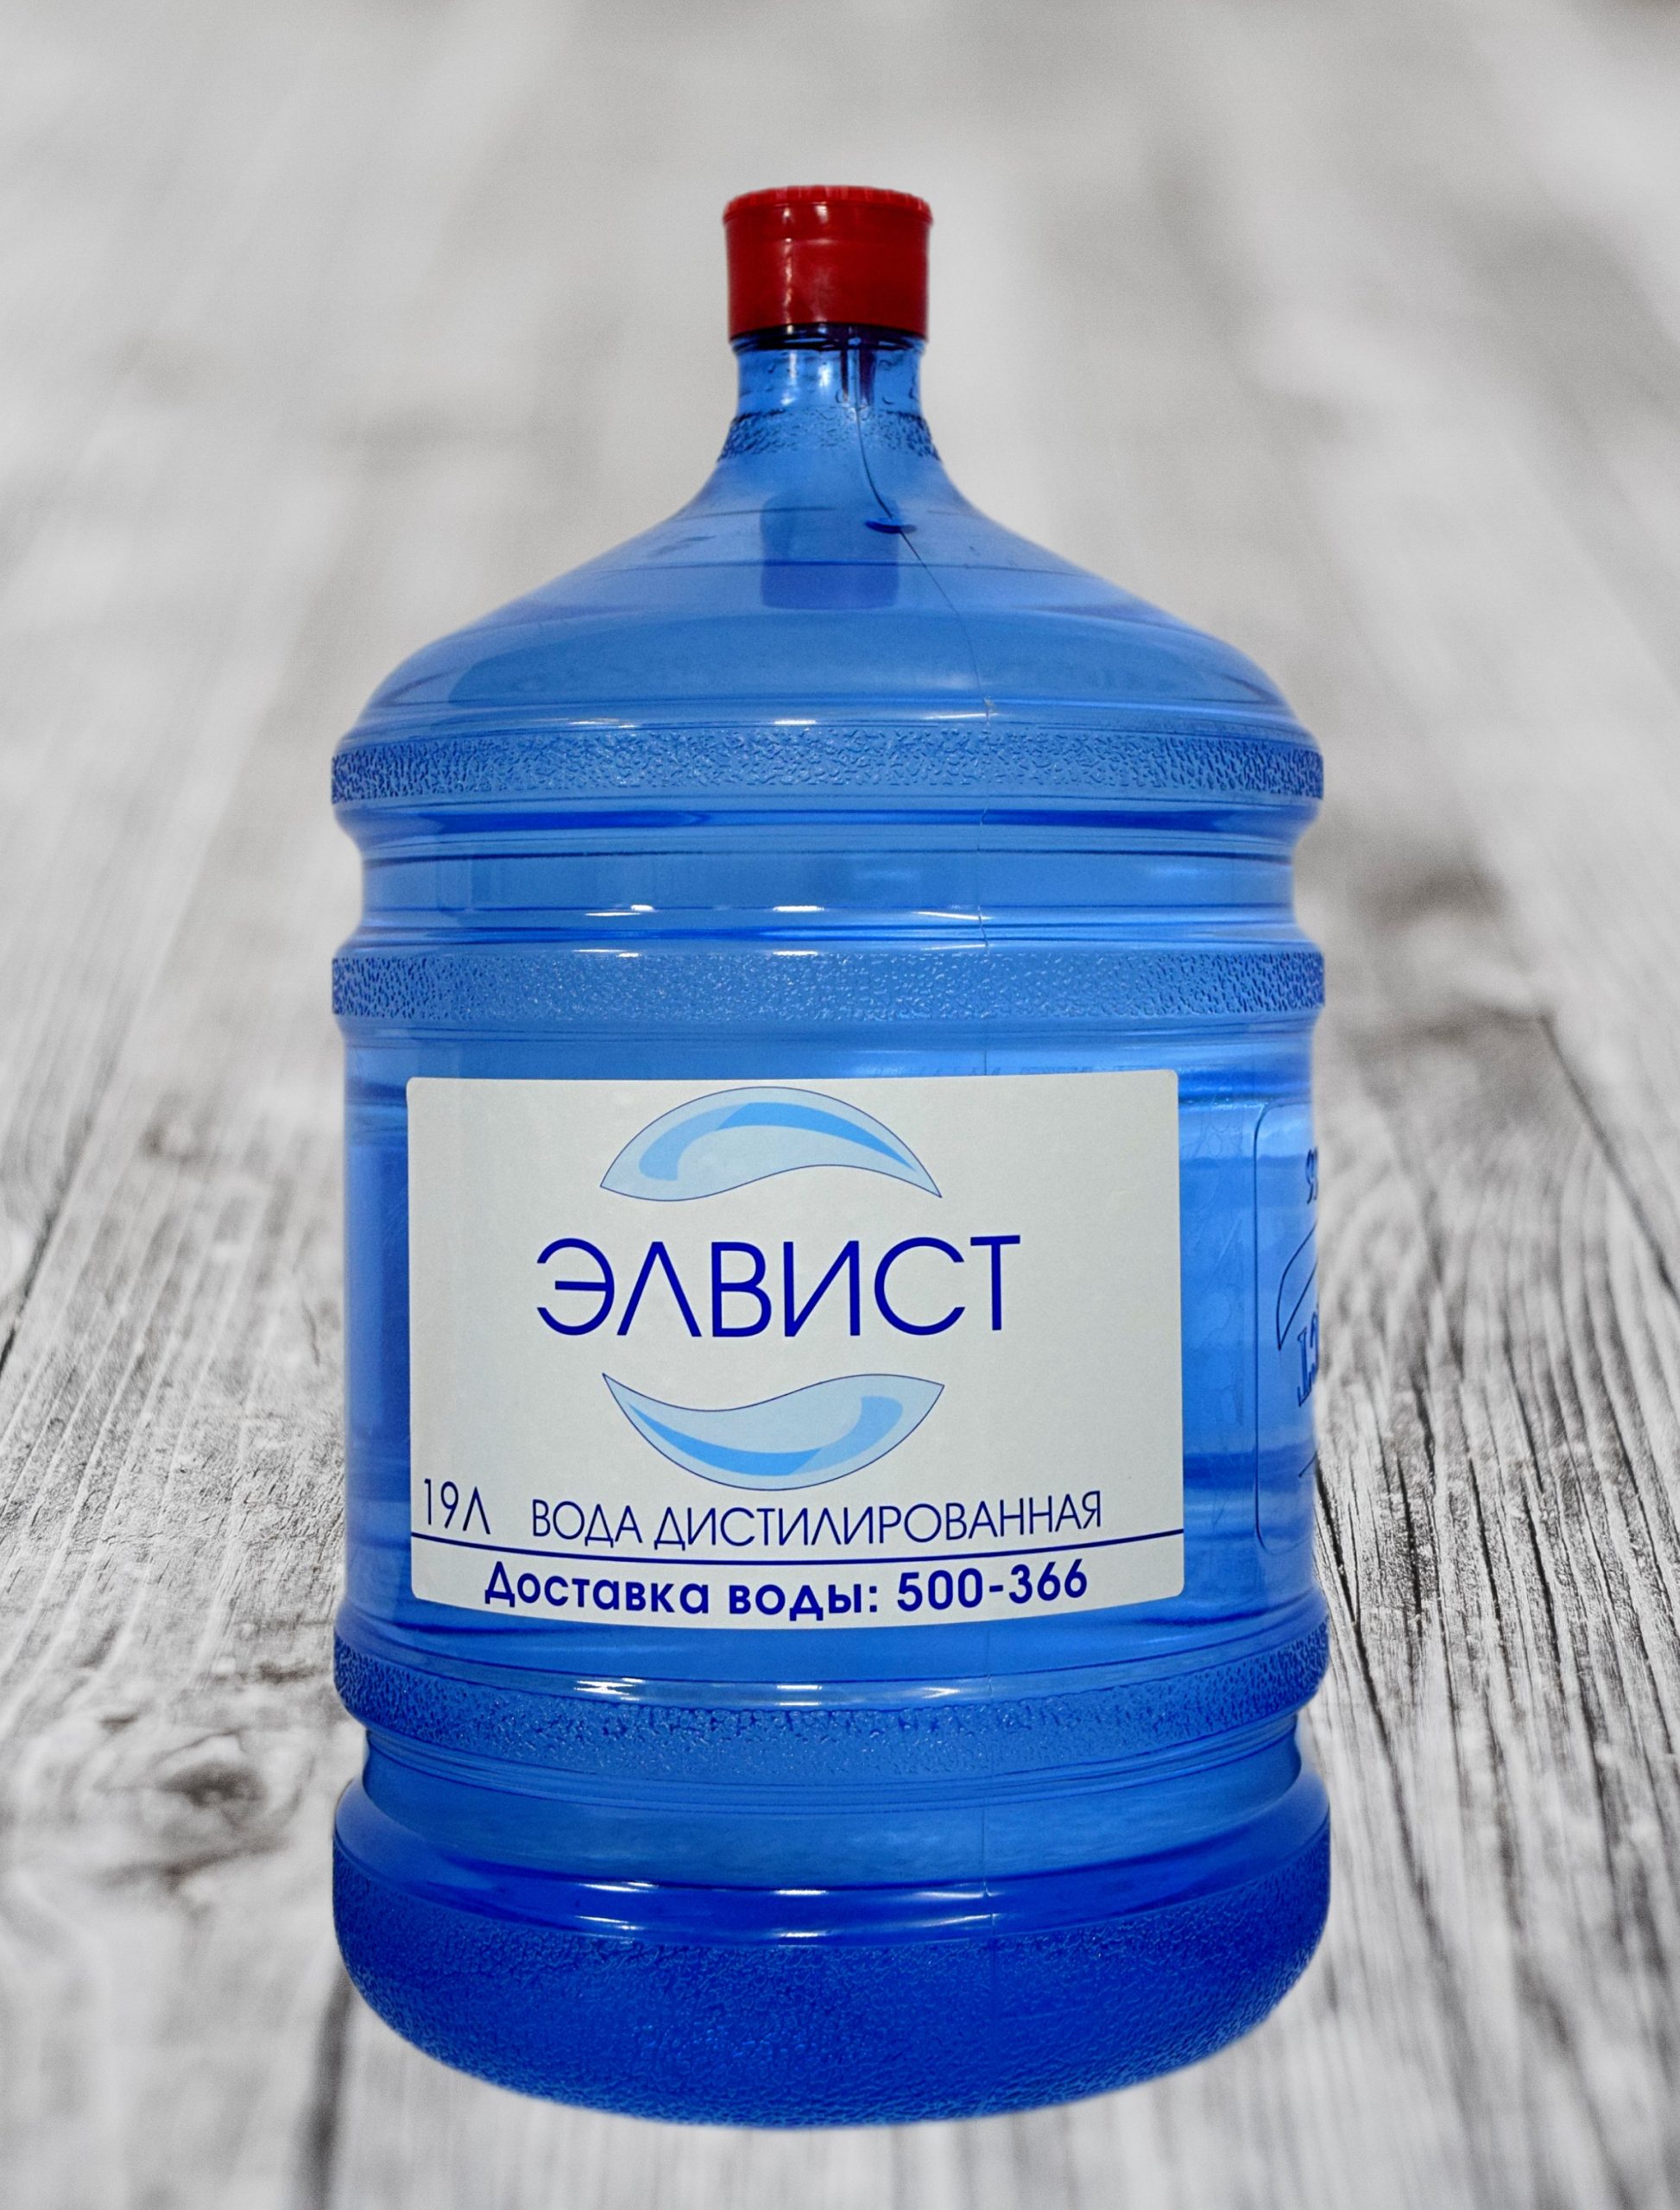 Купить дистиллированную воду в Тюмени 5, 19 литров.